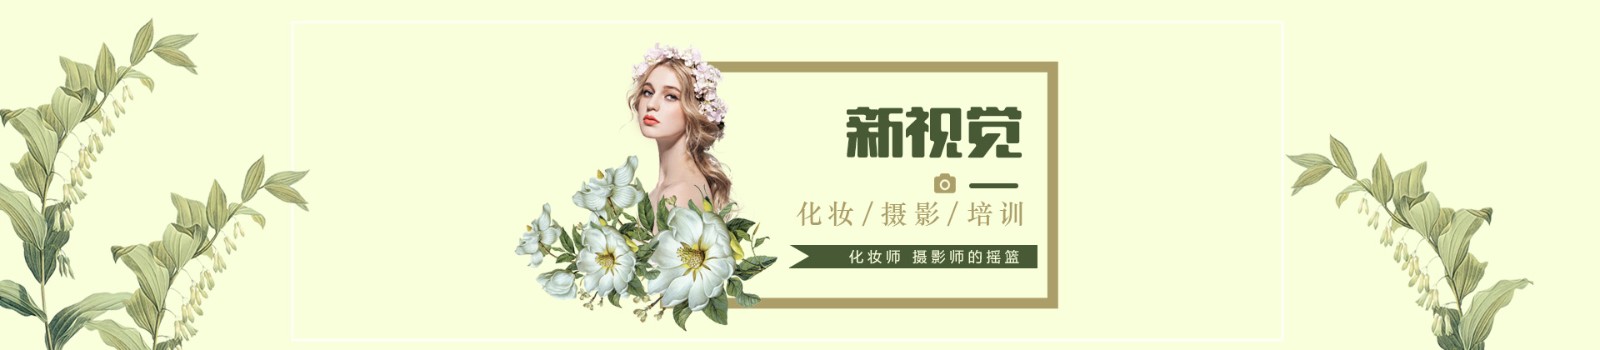 杭州新视觉化妆培训学校 横幅广告